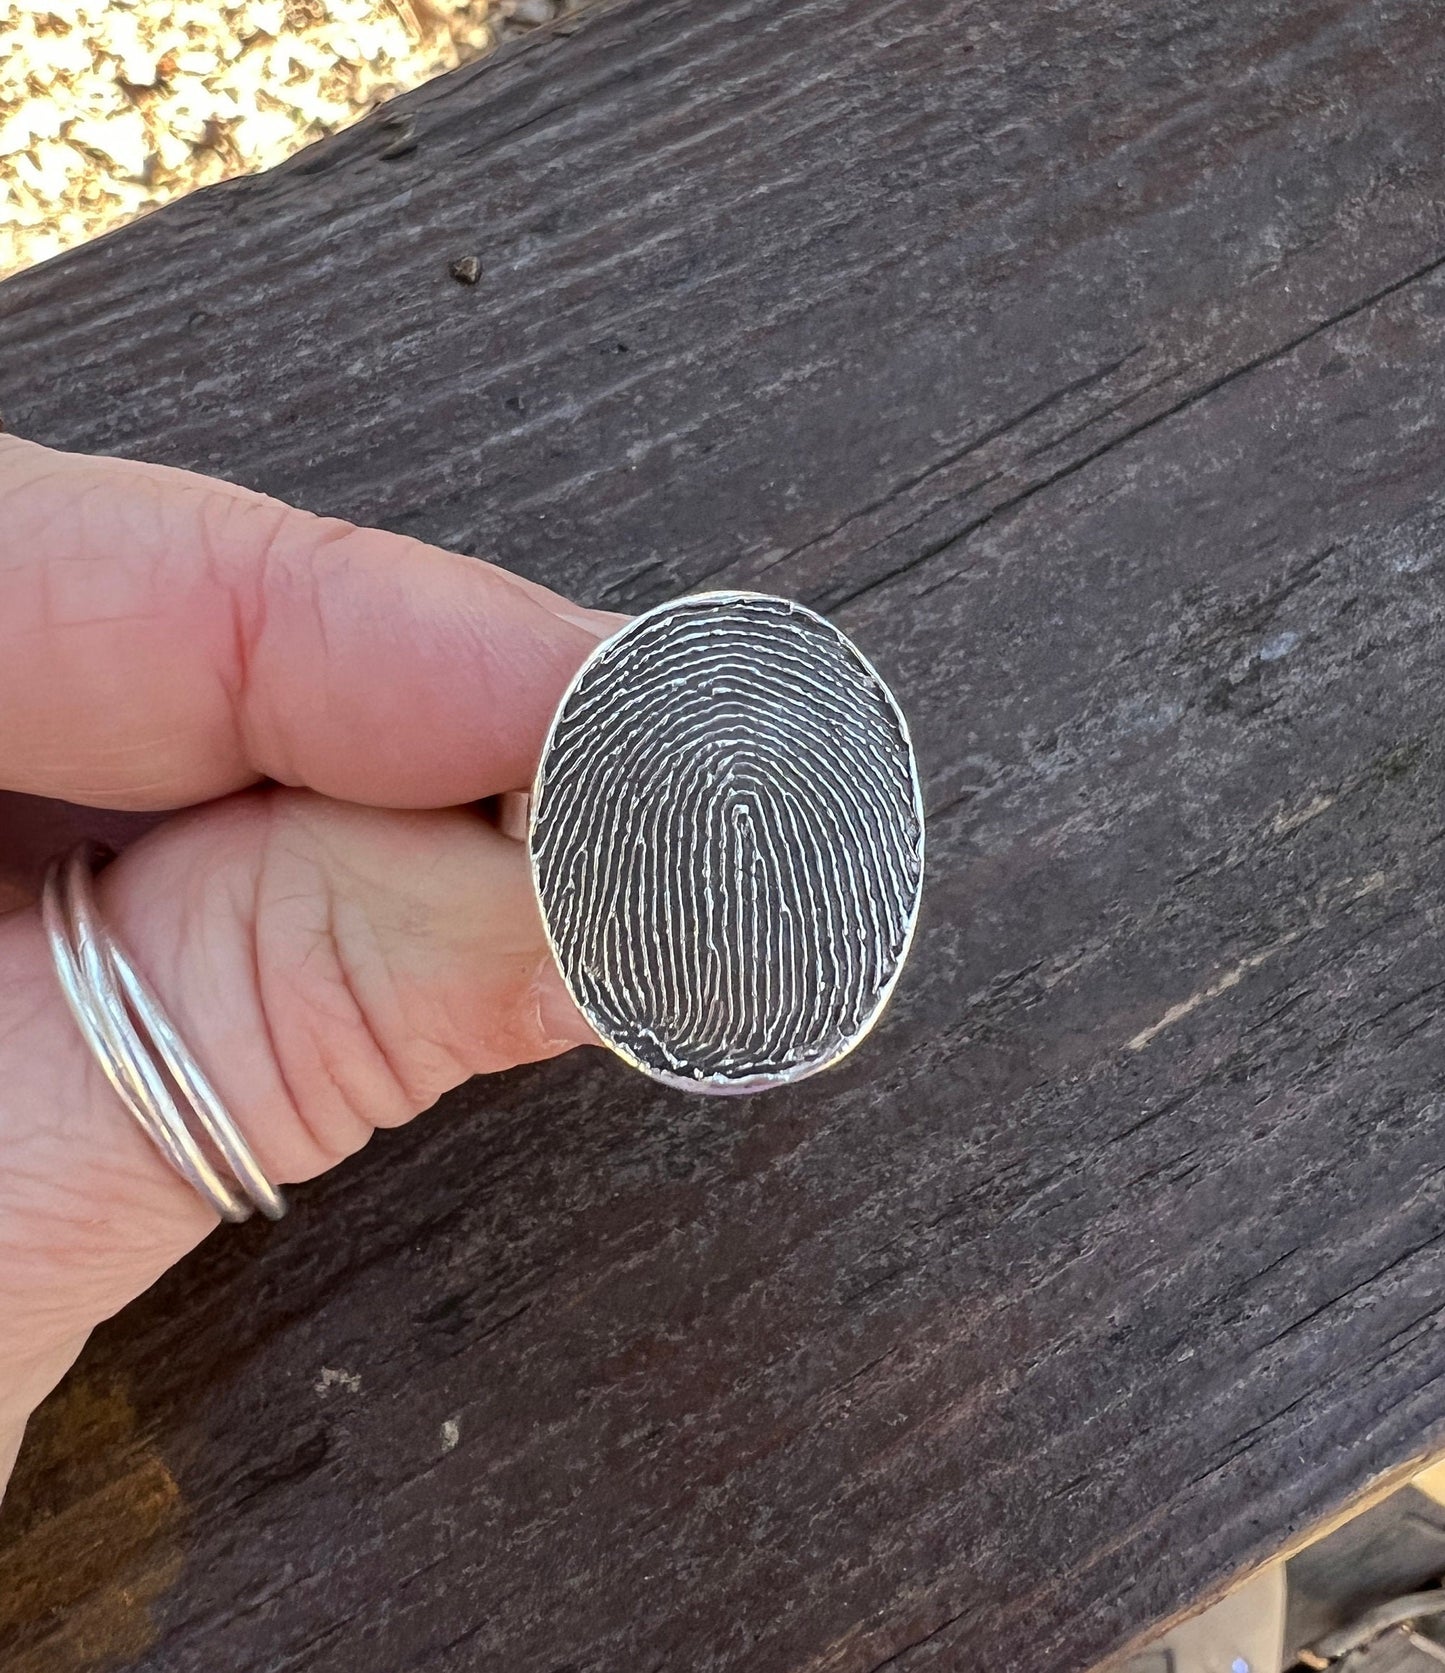 Full Fingerprint Solid Sterling Silver Ring